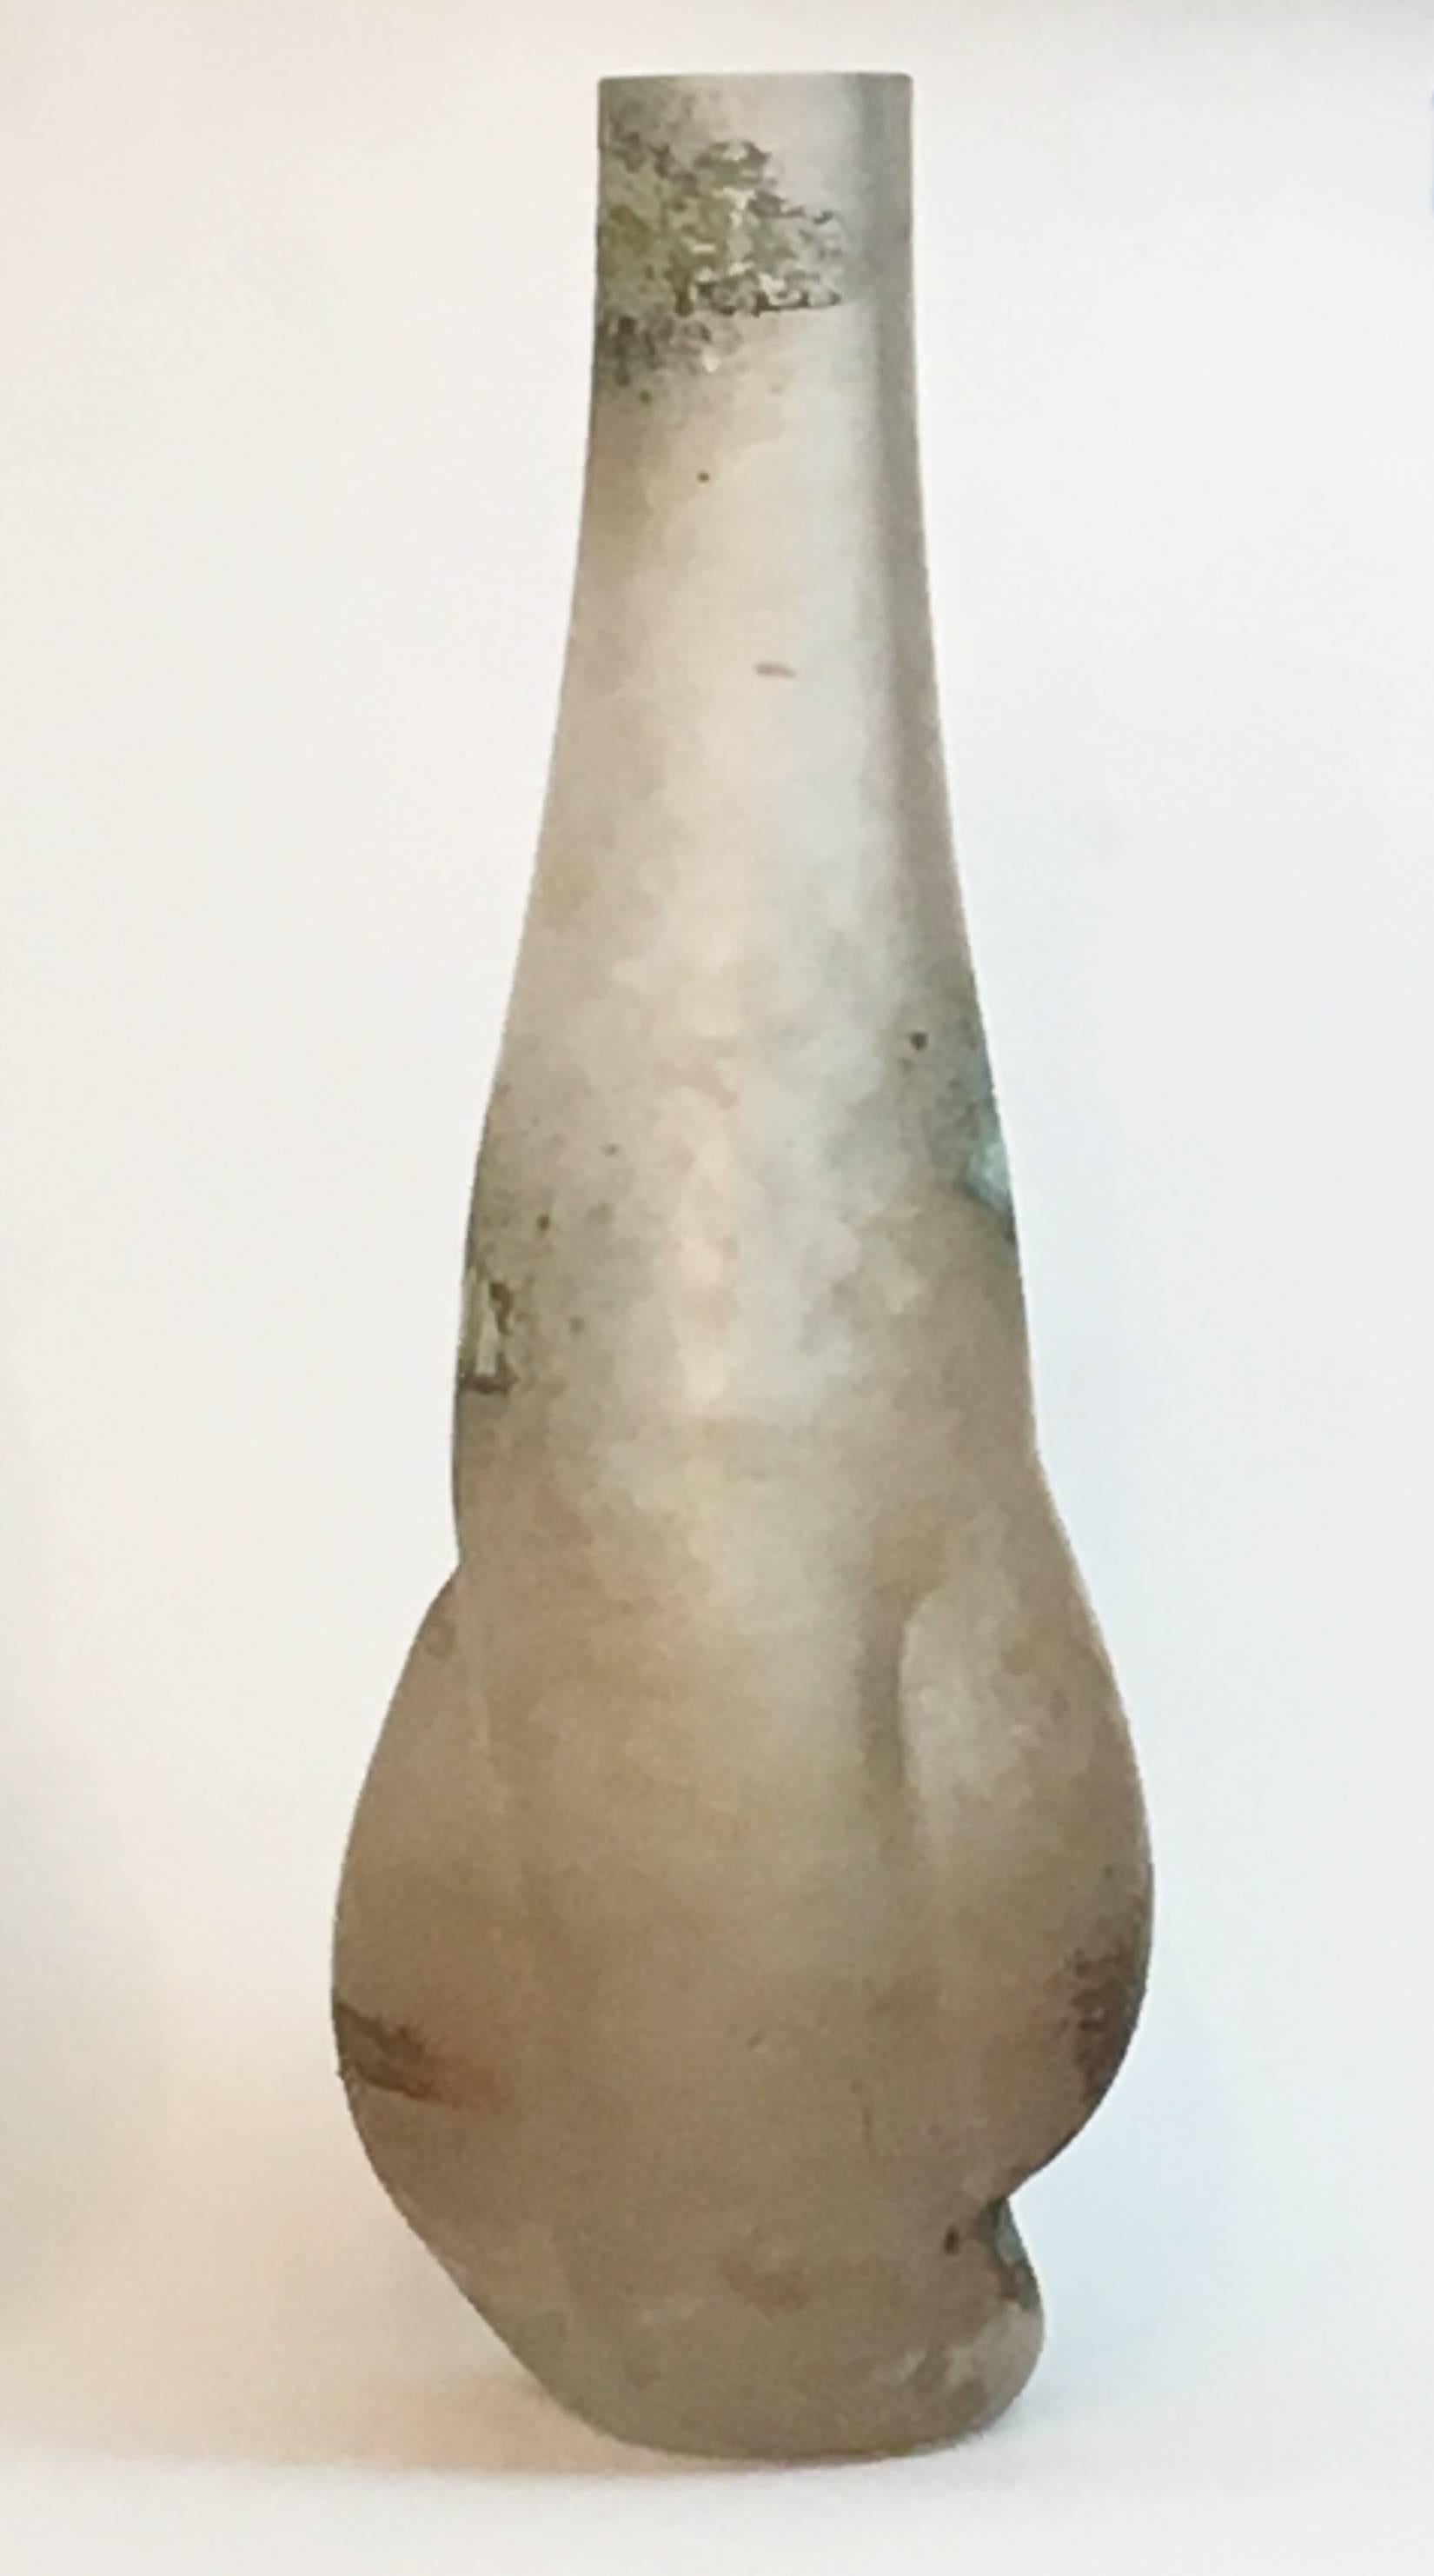 Très grand vase en verre de Murano réalisé par Cenedese selon la technique du scavo, avec des zones d'oxyde de fer sur un fond clair à ambré.